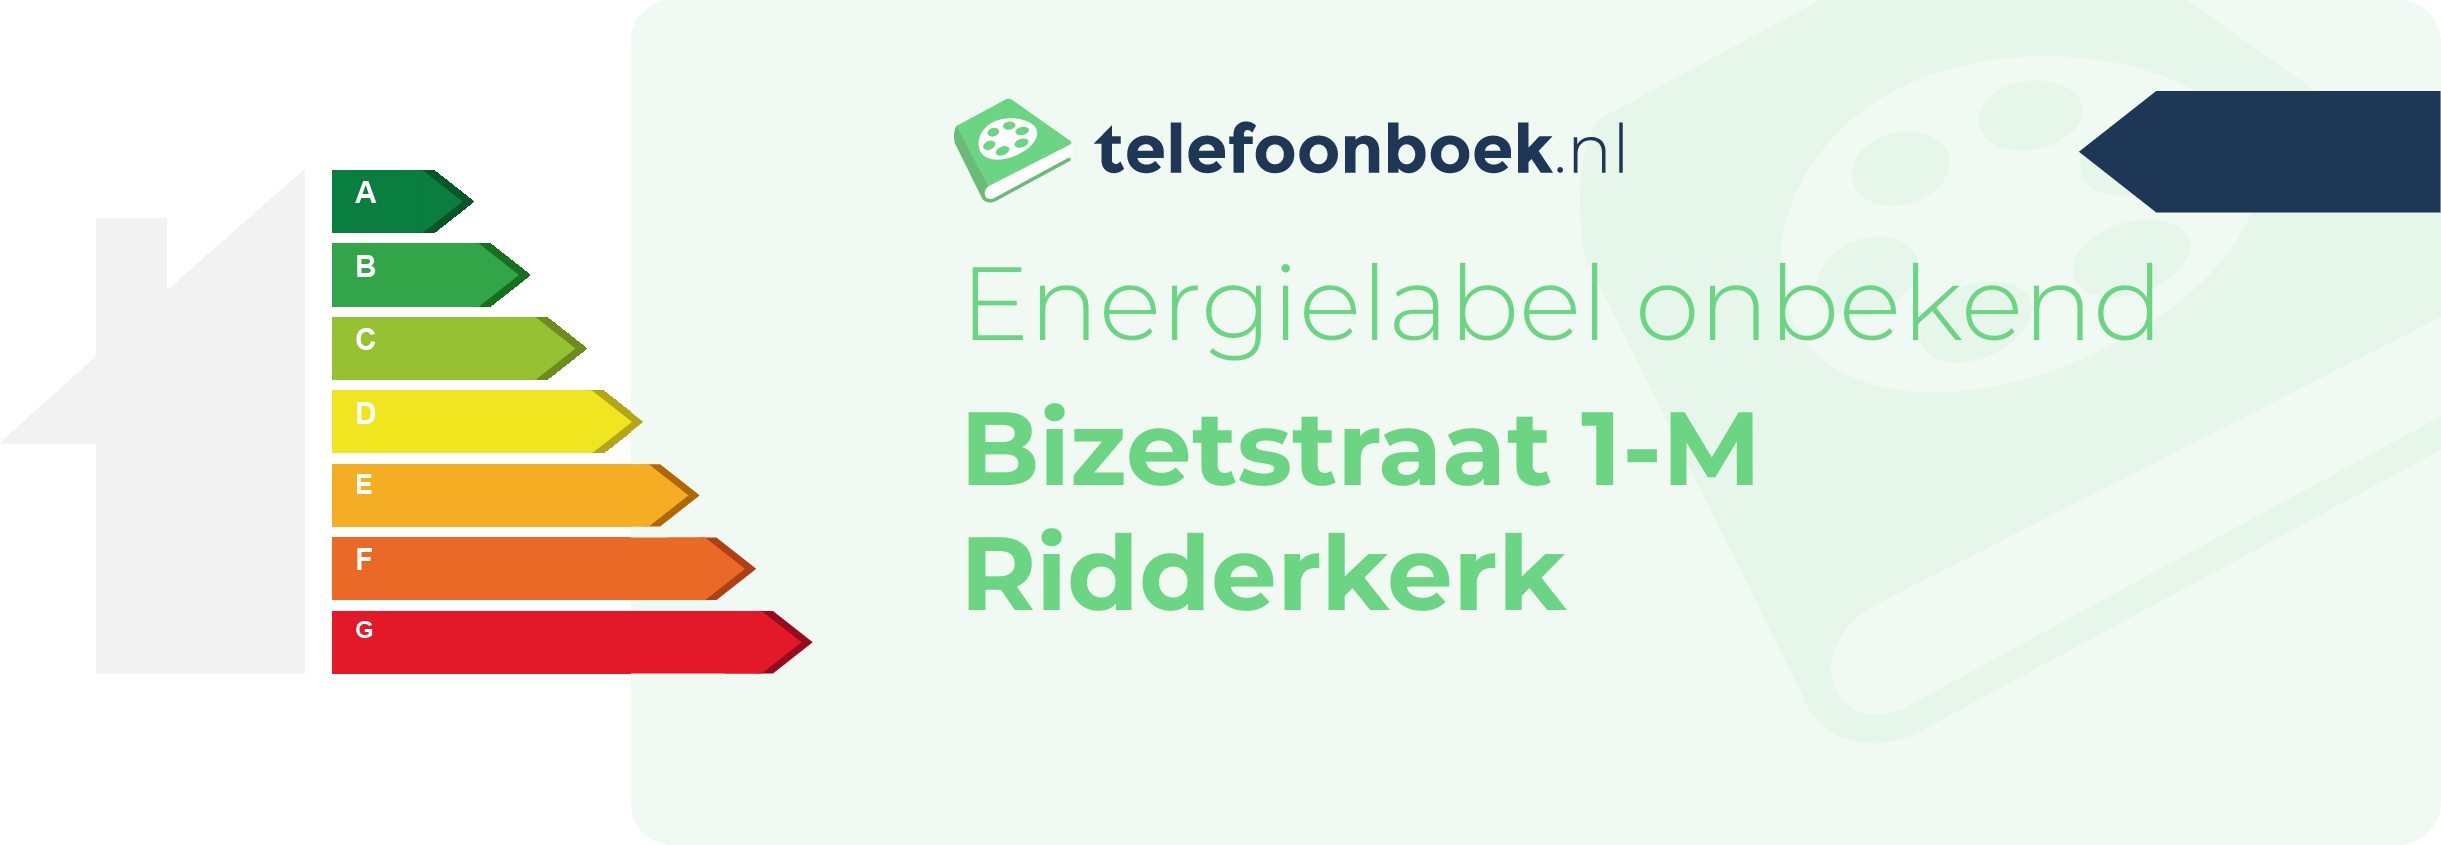 Energielabel Bizetstraat 1-M Ridderkerk